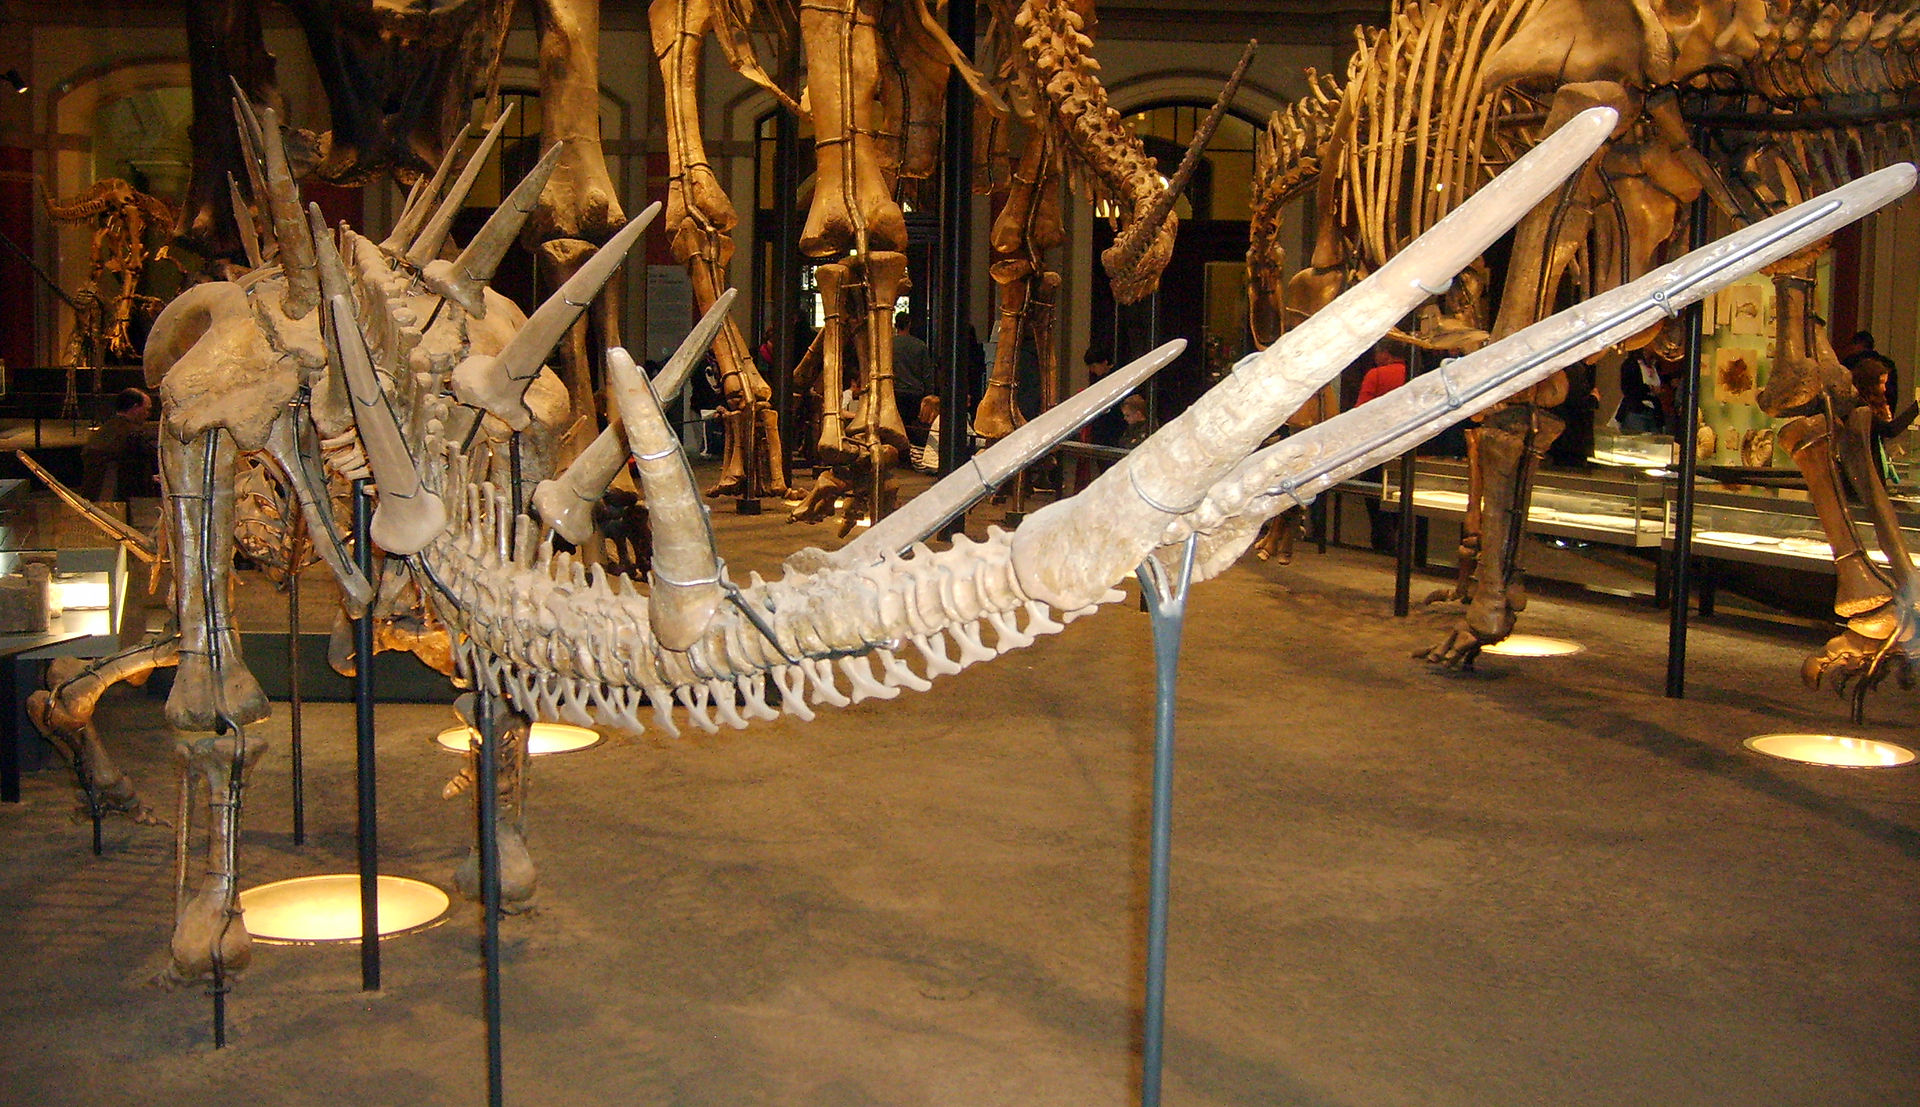 Kostra východoafrického stegosaurida druhu Kentrosaurus aethiopicus v berlínském Museum für Naturkunde. Z tohoto pohledu jsou velmi dobře patrné dlouhé a relativně tenké ocasní hroty dinosaura, které zřejmě představovaly velmi nebezpečnou obrannou zb